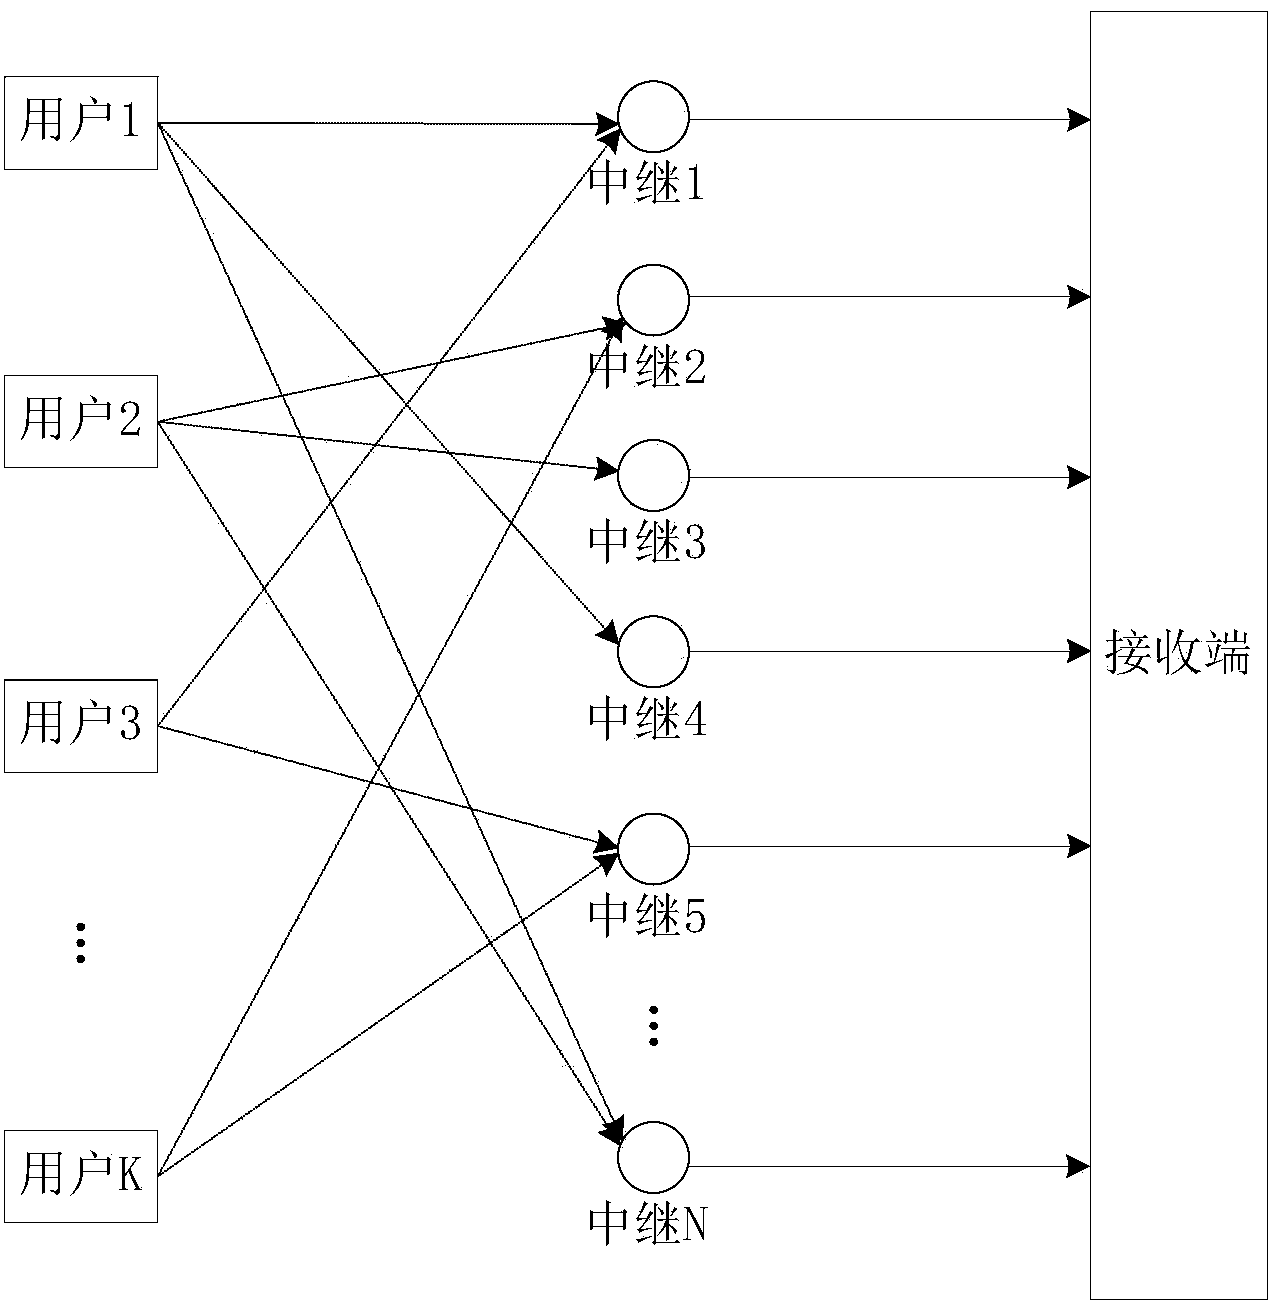 Network coding cooperative communication method based on polarization codes